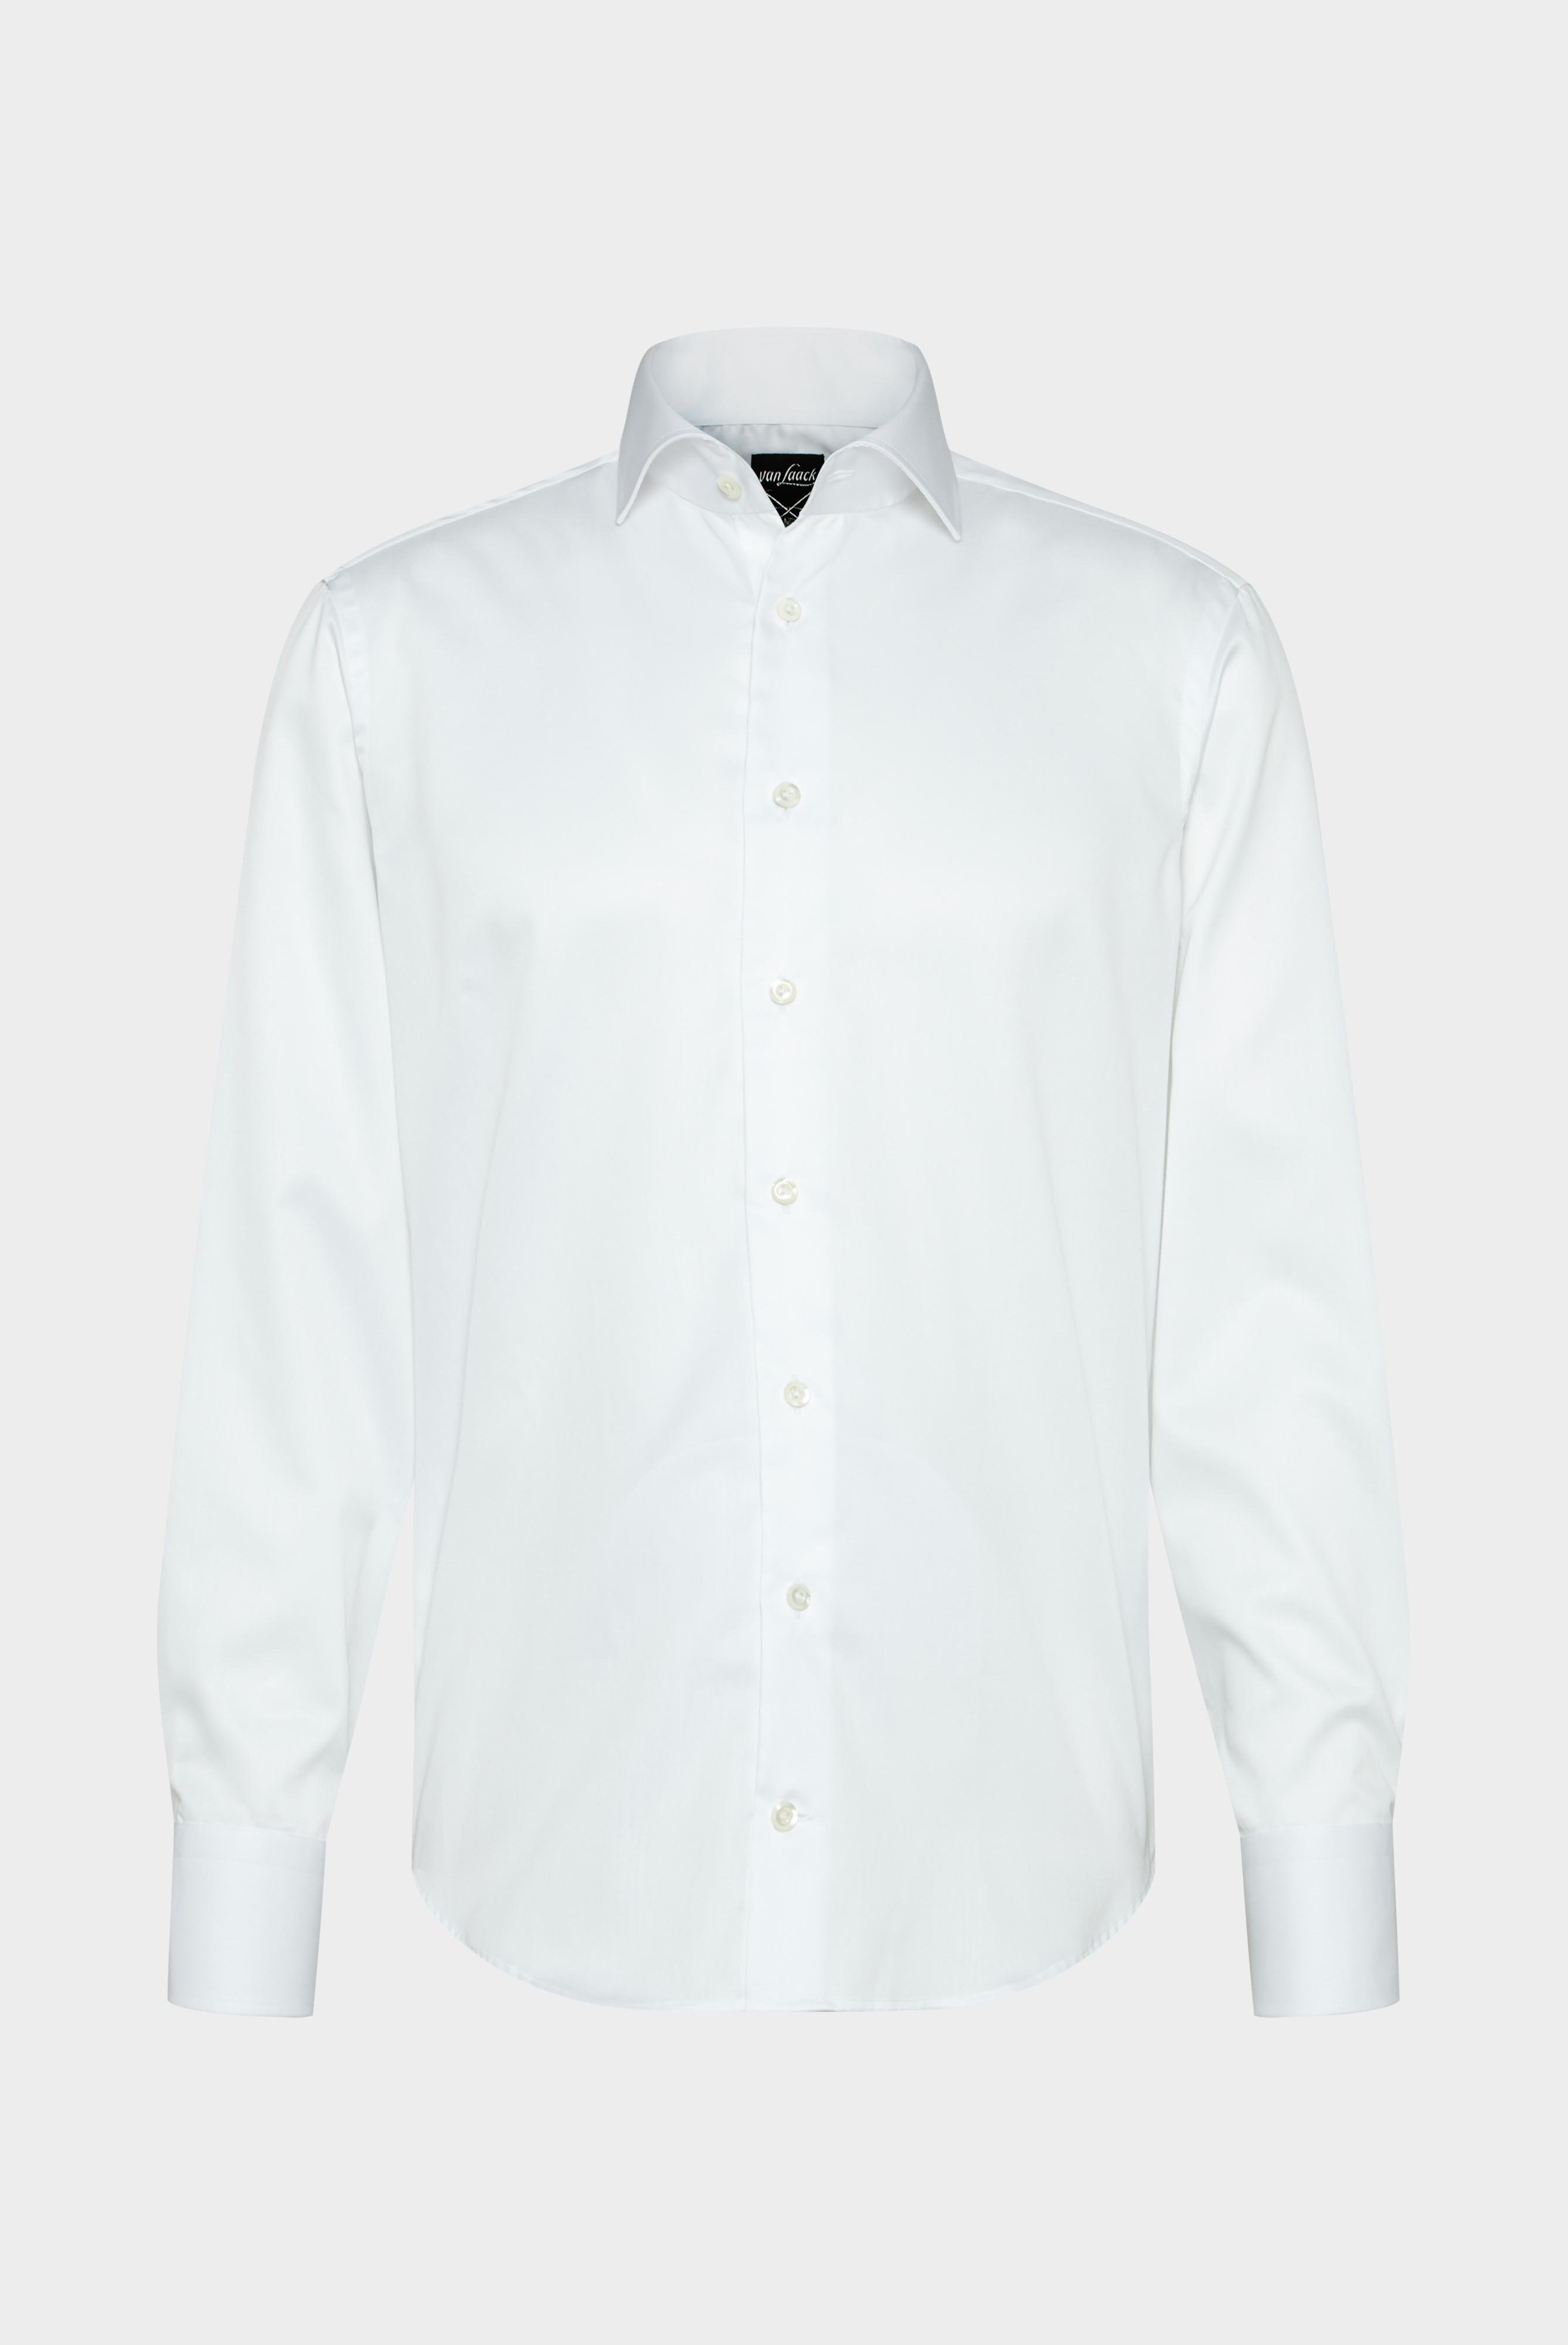 Bügelleichte Hemden+Bügelfreies Twill Hemd Tailor Fit+20.2020.BQ.132241.000.41